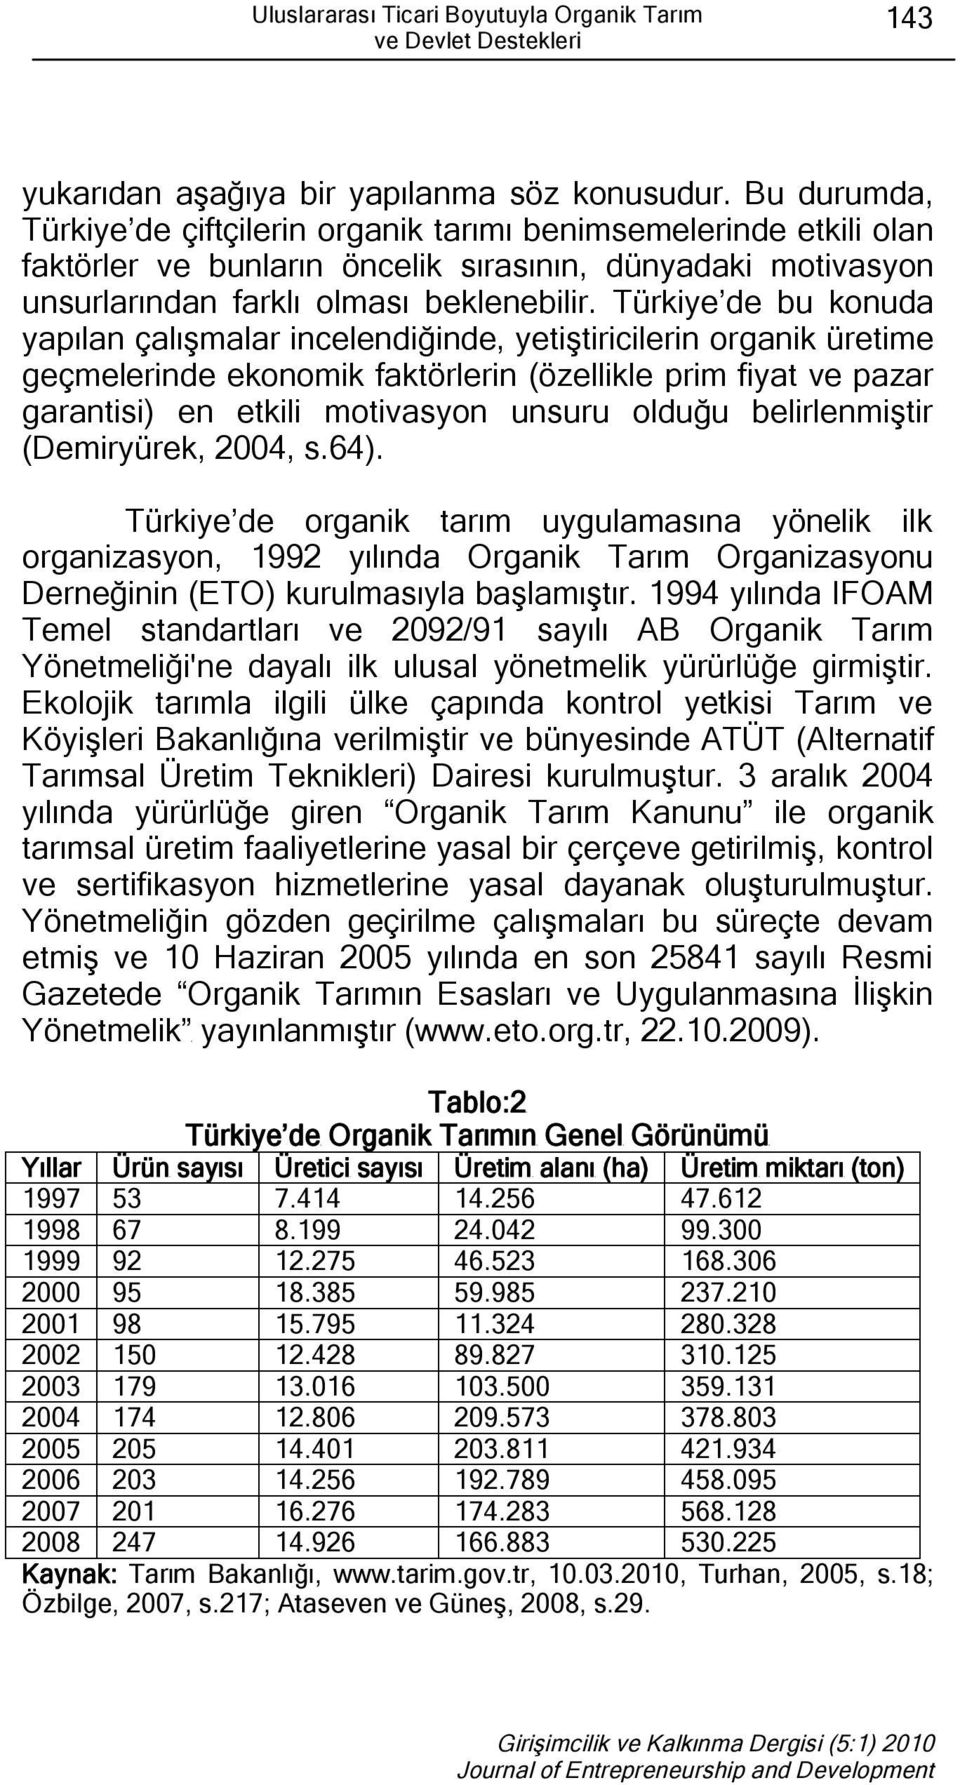 Türkiye de bu konuda yapılan çalışmalar incelendiğinde, yetiştiricilerin organik üretime geçmelerinde ekonomik faktörlerin (özellikle prim fiyat ve pazar garantisi) en etkili motivasyon unsuru olduğu